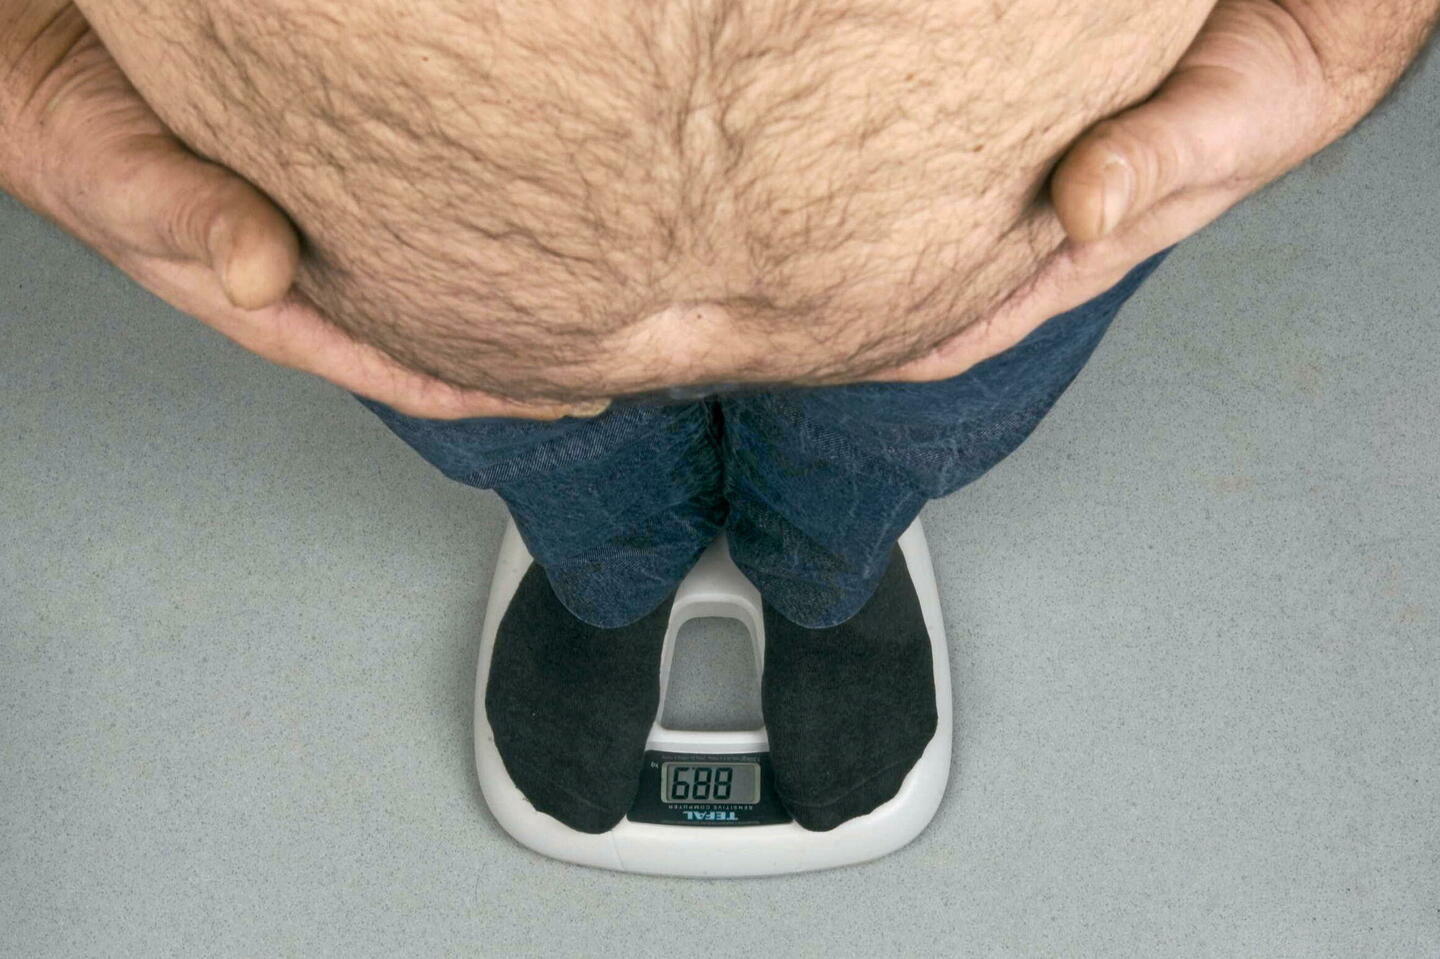 surpoids et obésité : la vérité sur l’imc